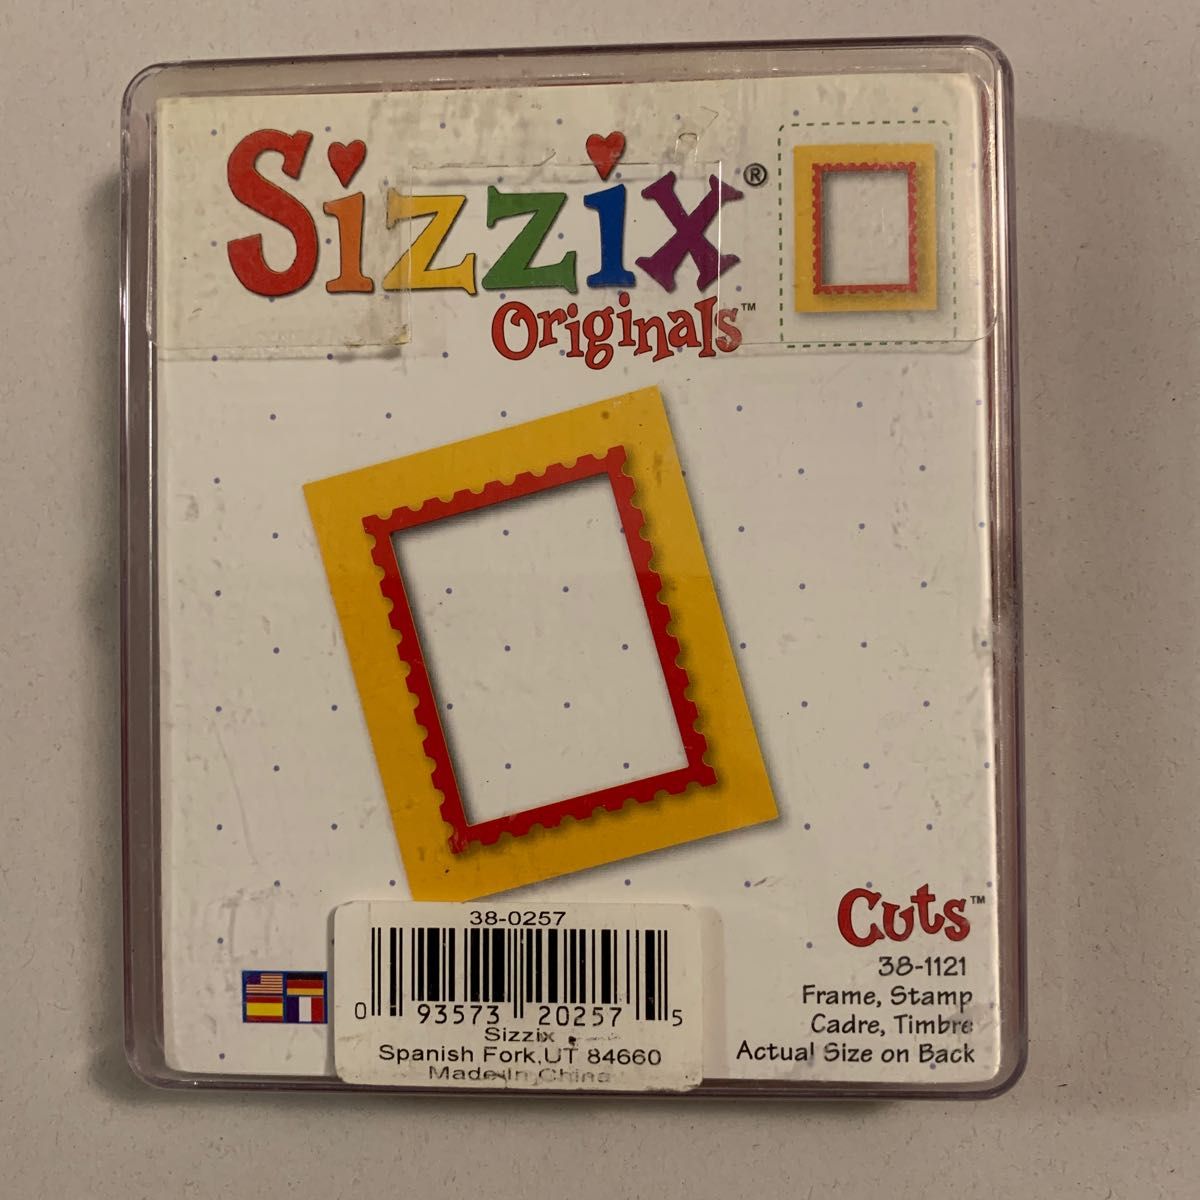 Sizzix Originals